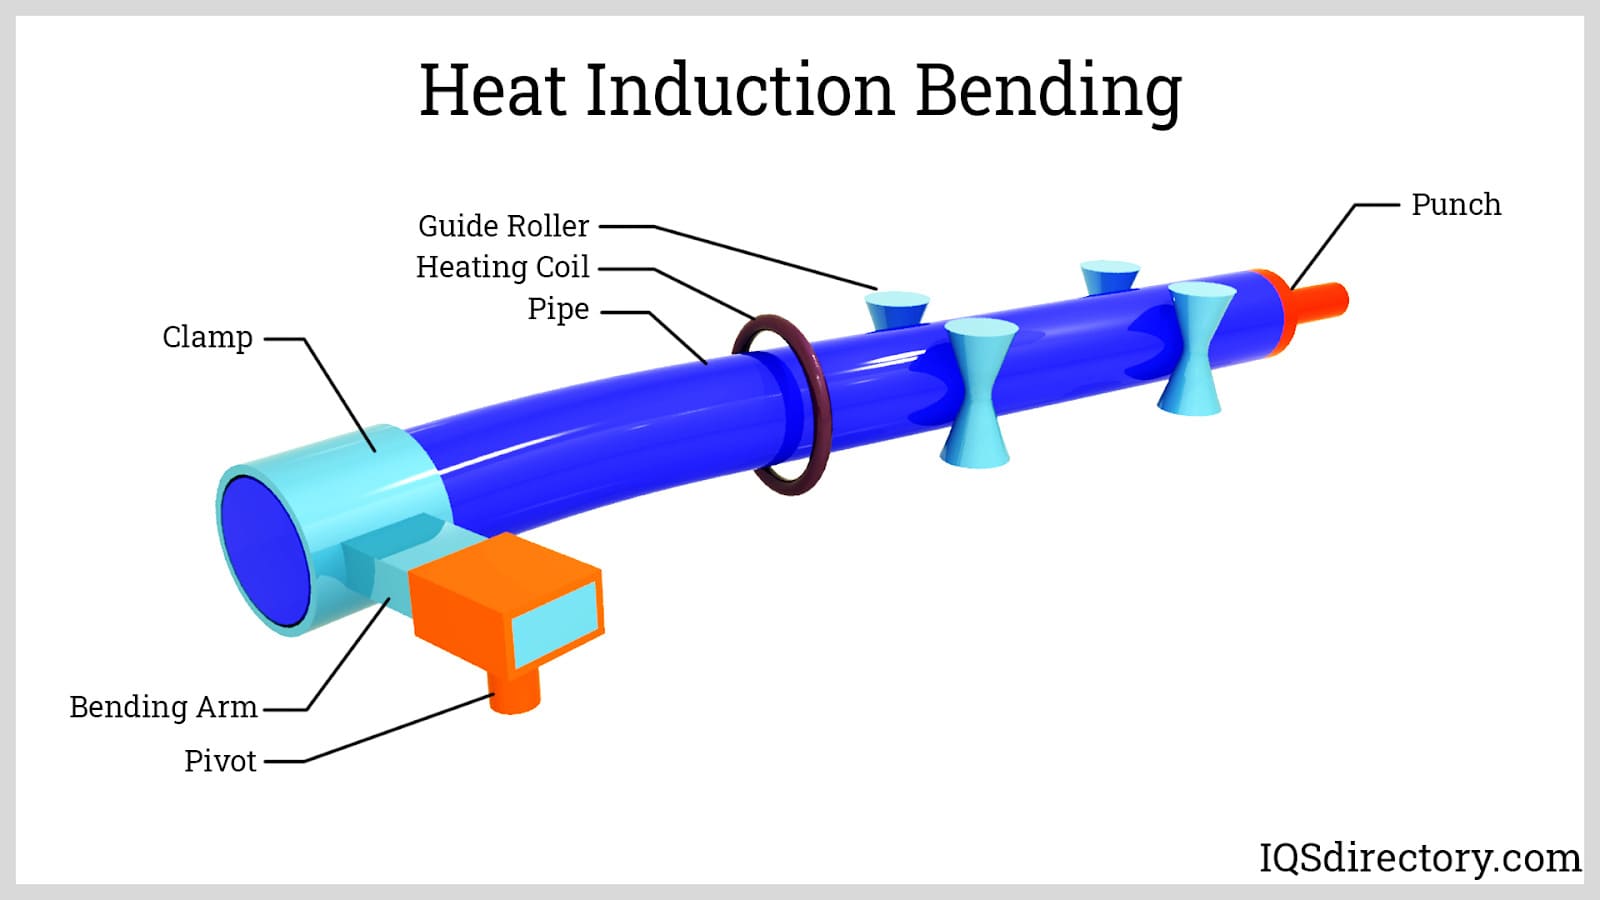 Heat Induction Bending